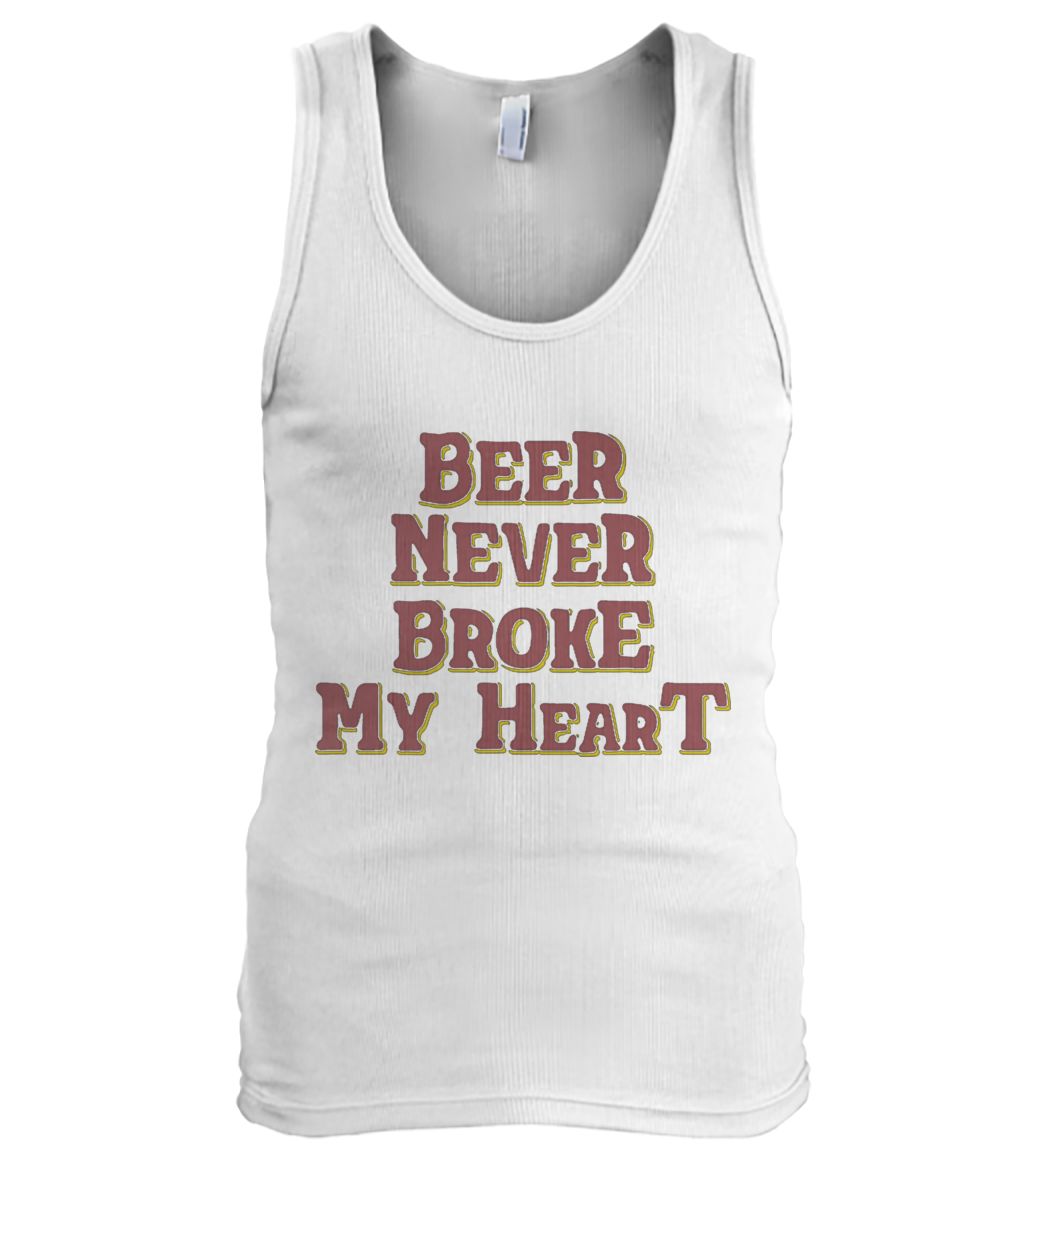 Beer never broke my heart men's tank top